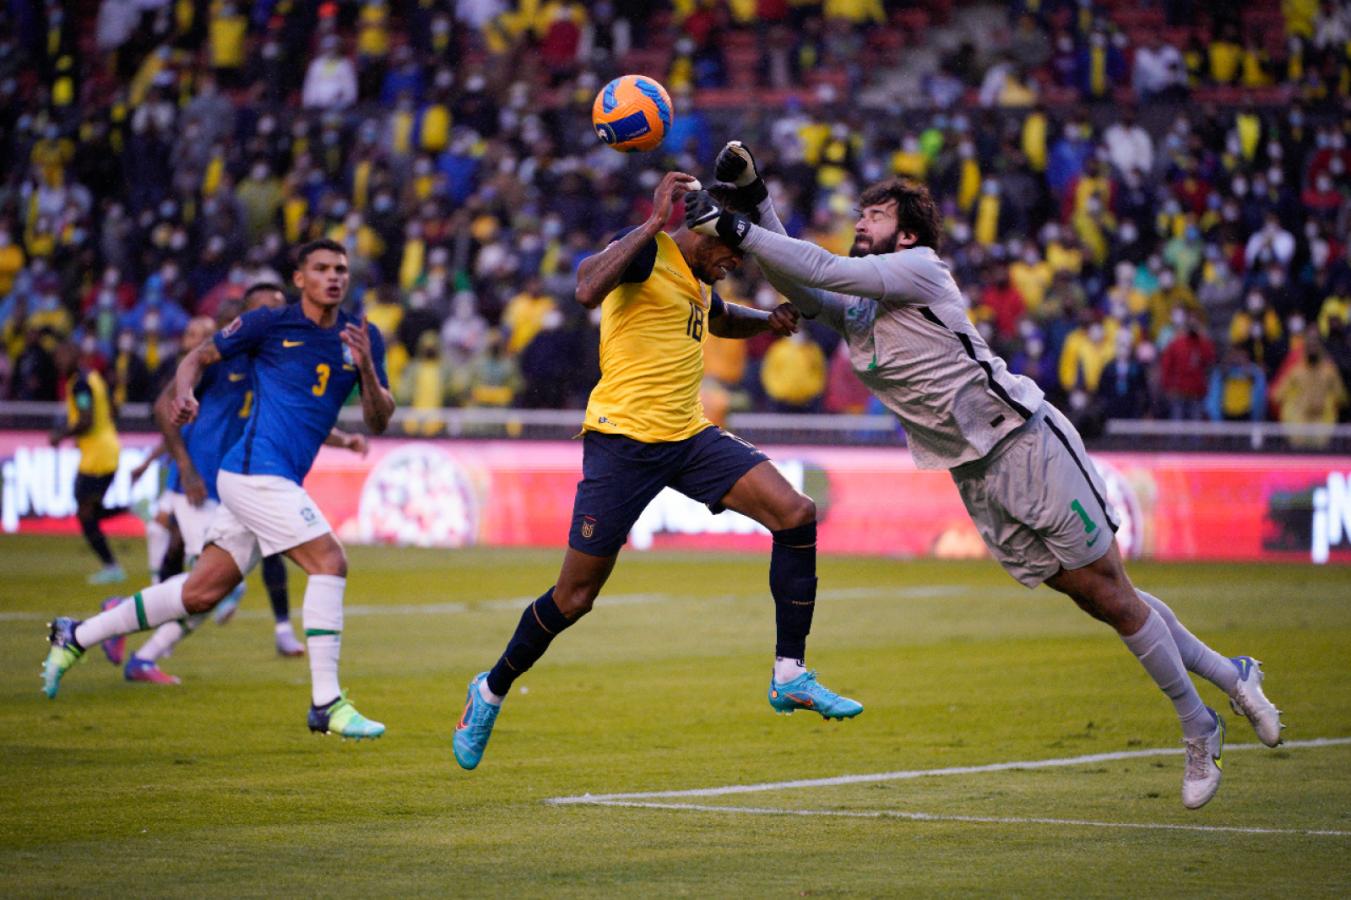 Imagen Alisson disputa el balón con Preciado, llega antes y termina golpeando al ecuatoriano. Roldán primero dio penal y roja pero luego revirtió ambas decisiones. Foto: AFP